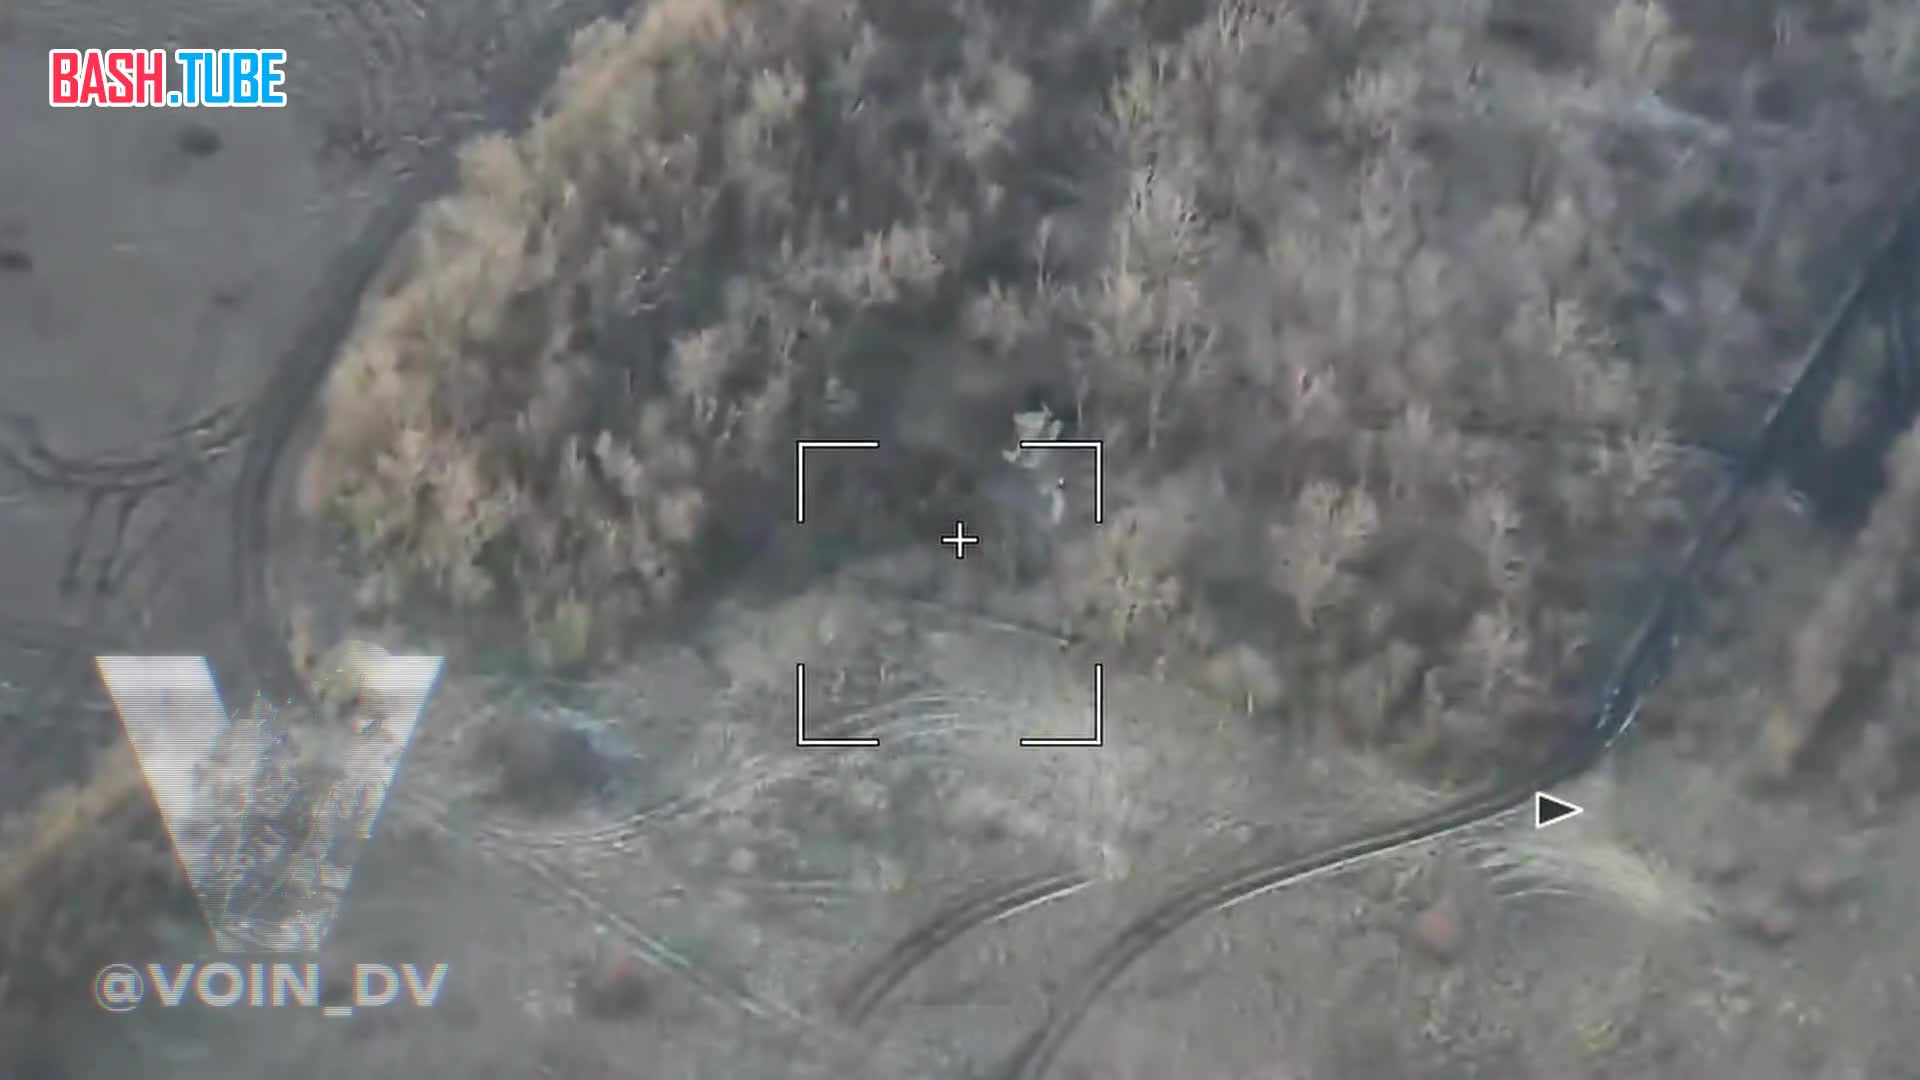  Российский барражирующий боеприпас «Ланцет-3» уничтожил американскую гаубицу M777 ВСУ в районе Угледара